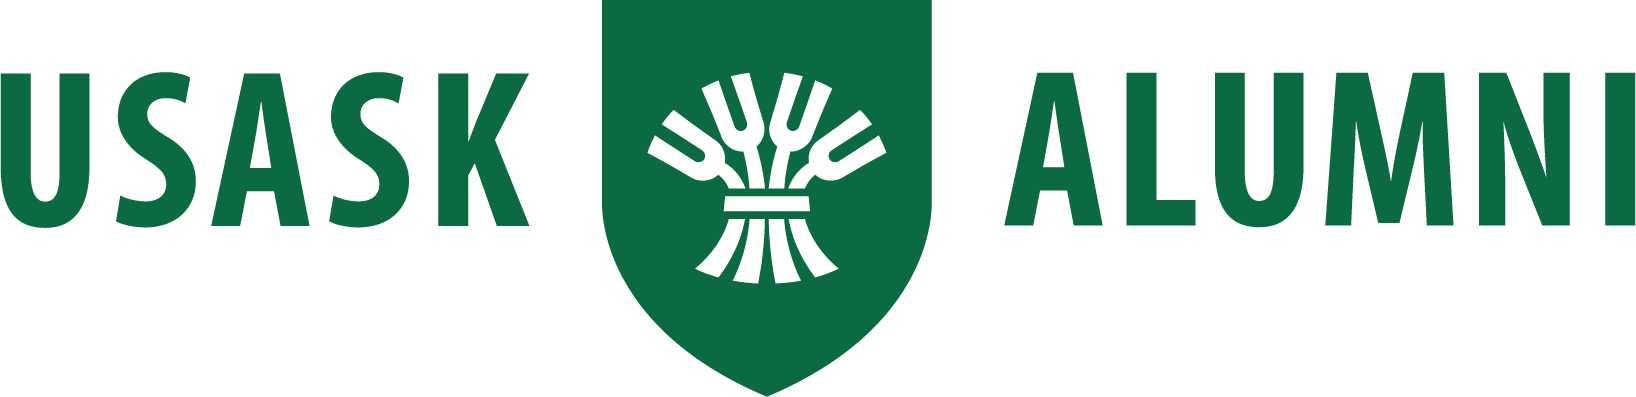 USask Alumni logo